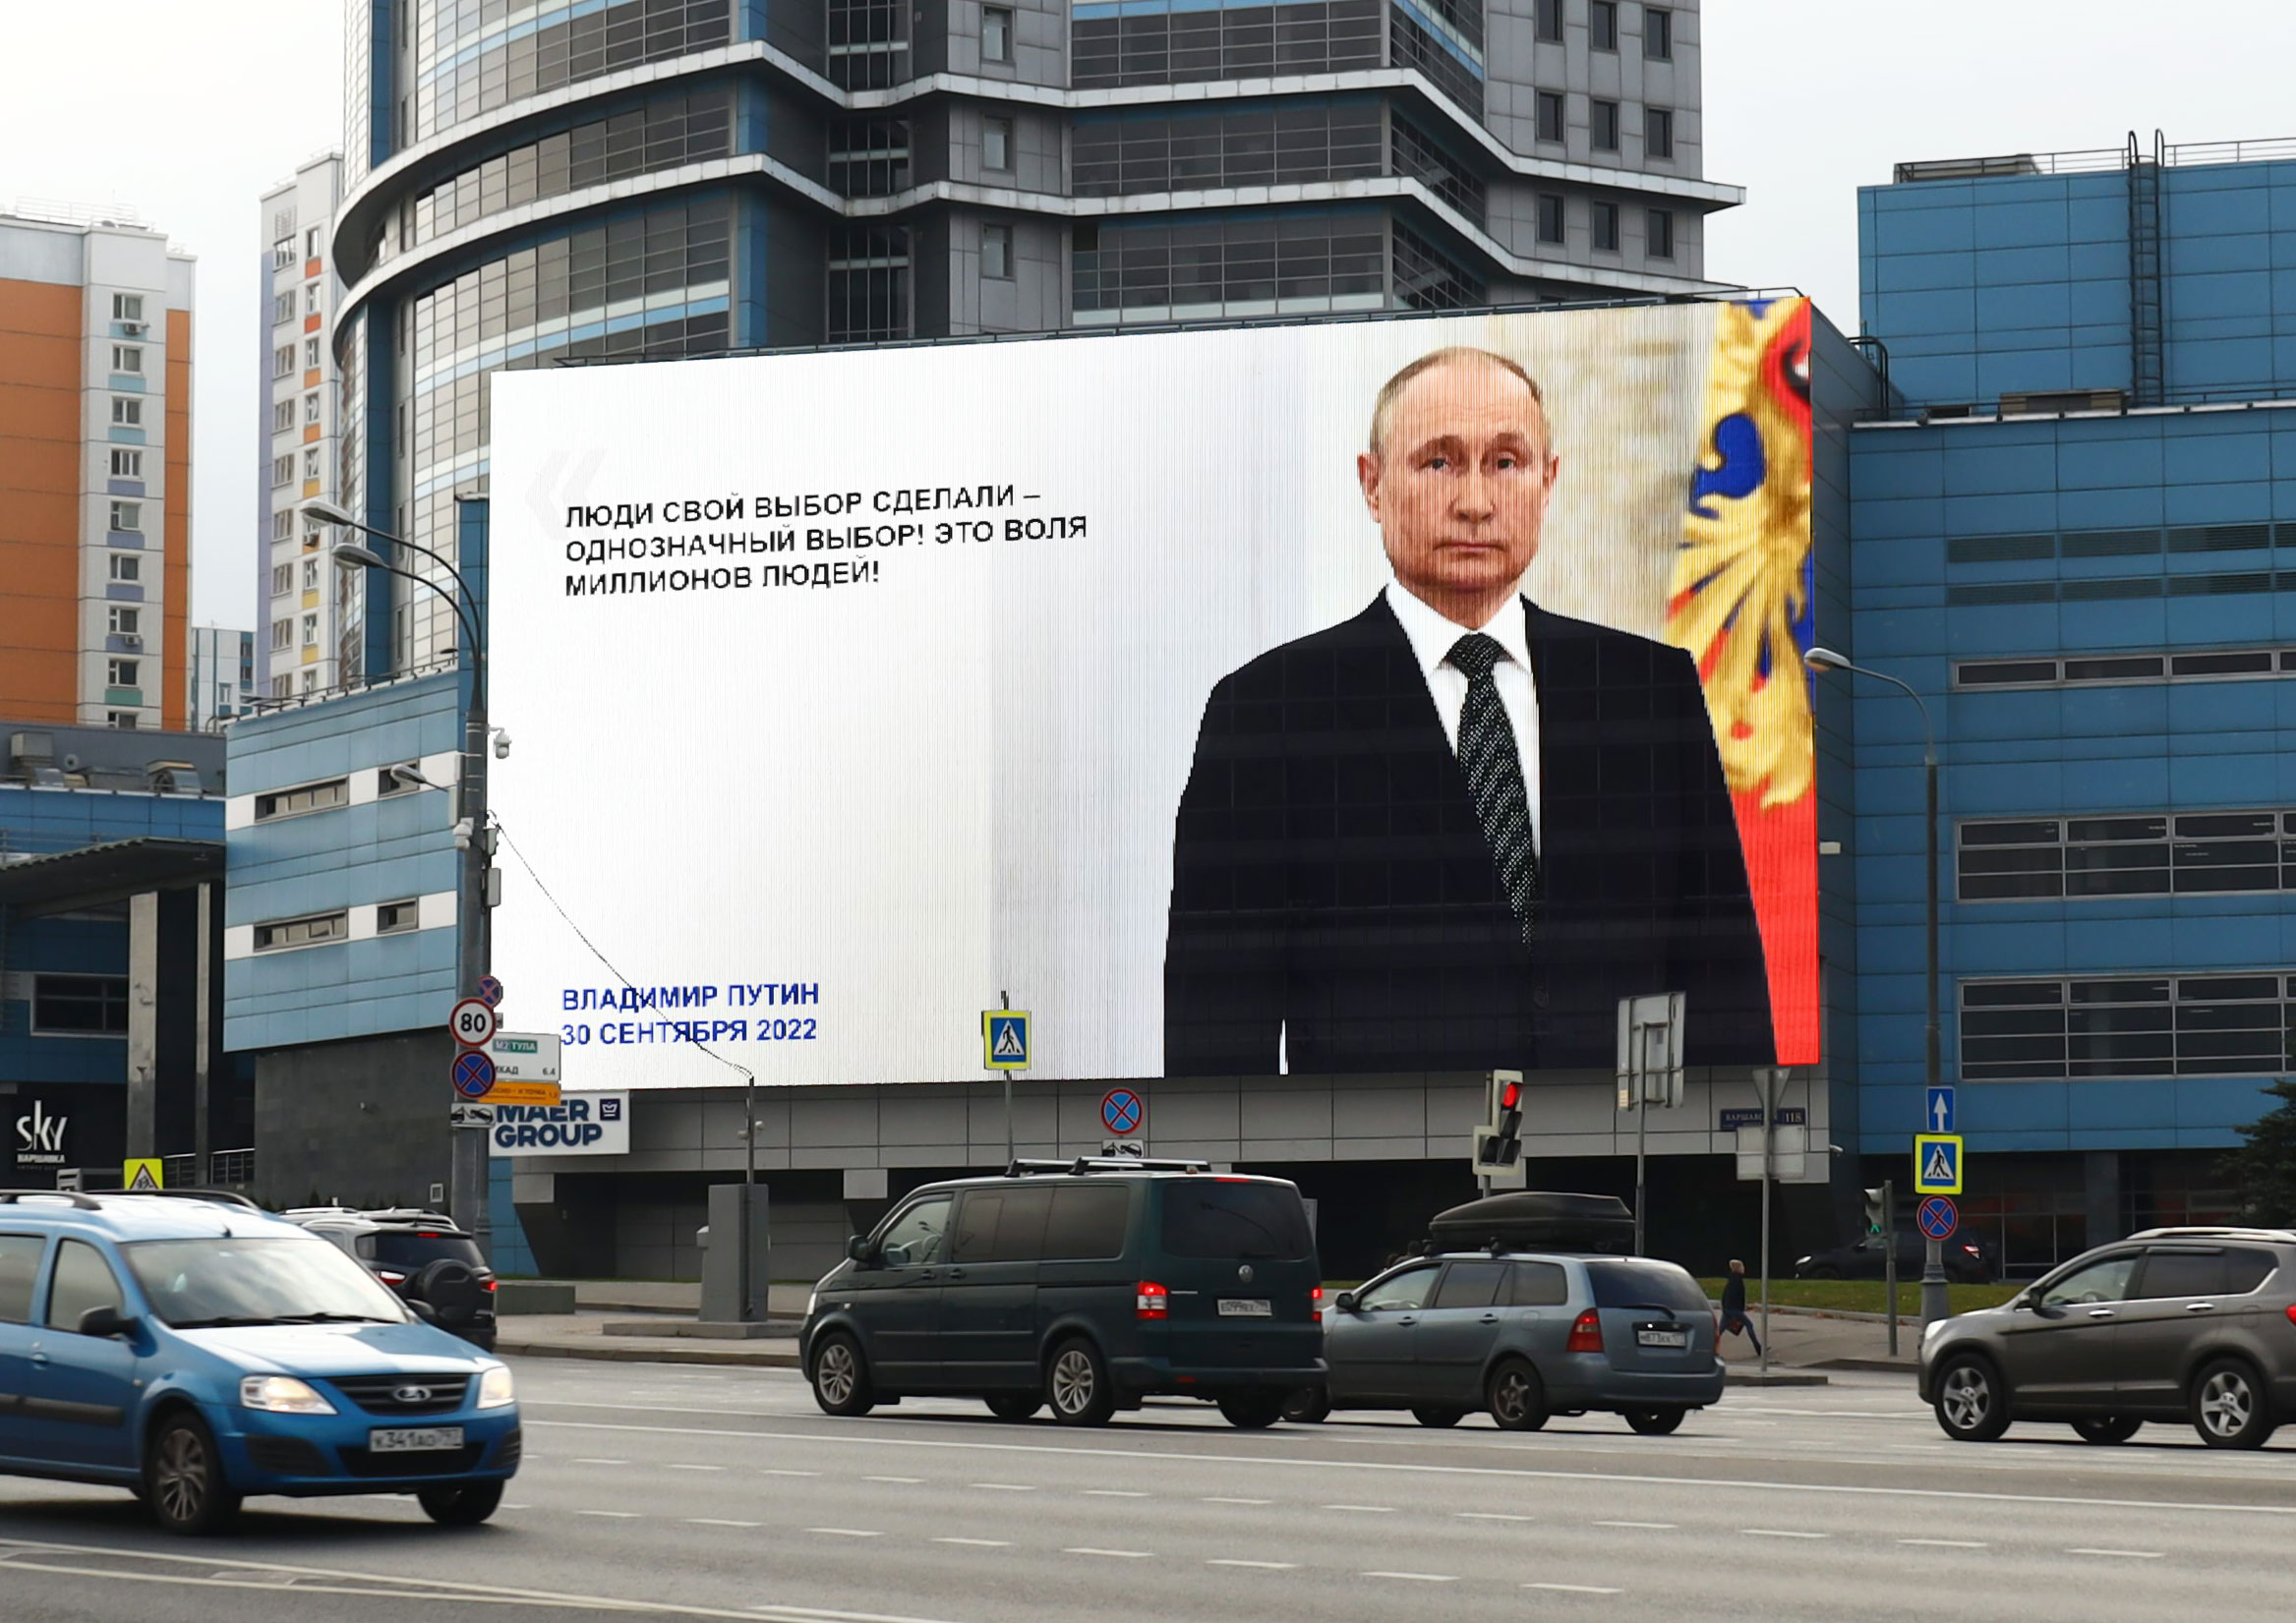 Трансляцию речи Путина на уличных медиаэкранах увидело свыше 11,6 млн человек